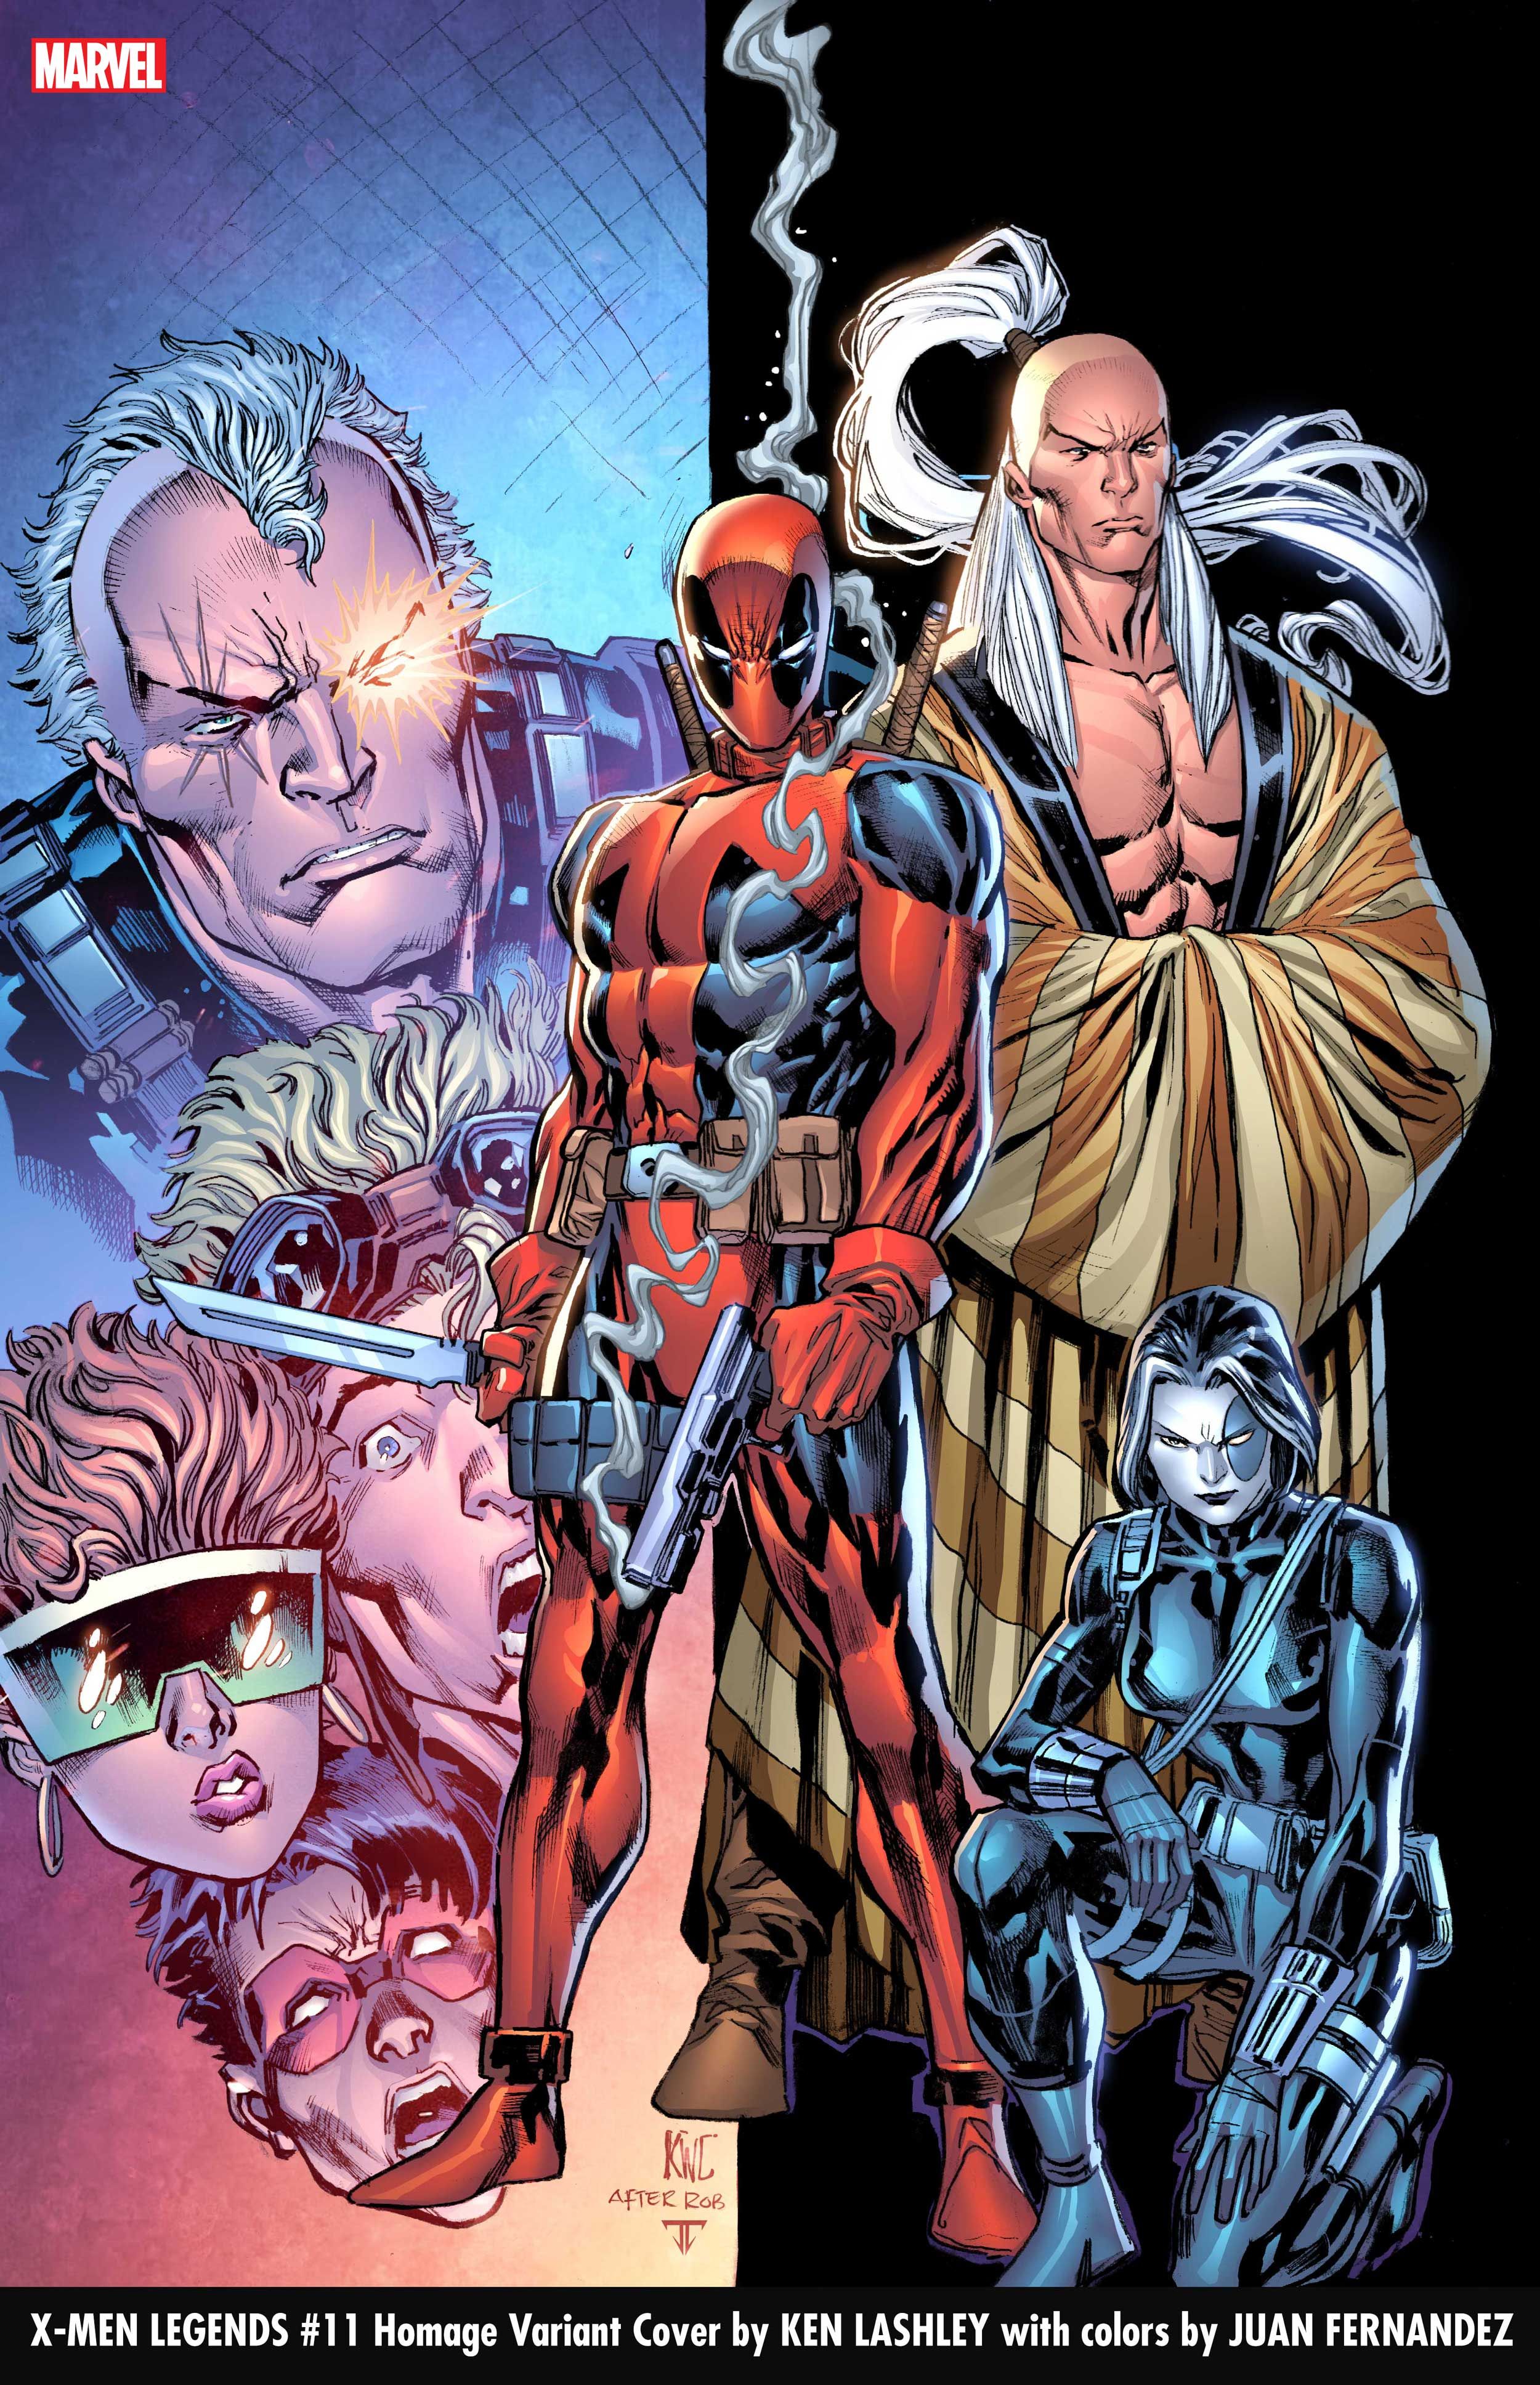 Ken Lashley and Juan Fernandez Homage Variant Cover for X-Men Legends #11